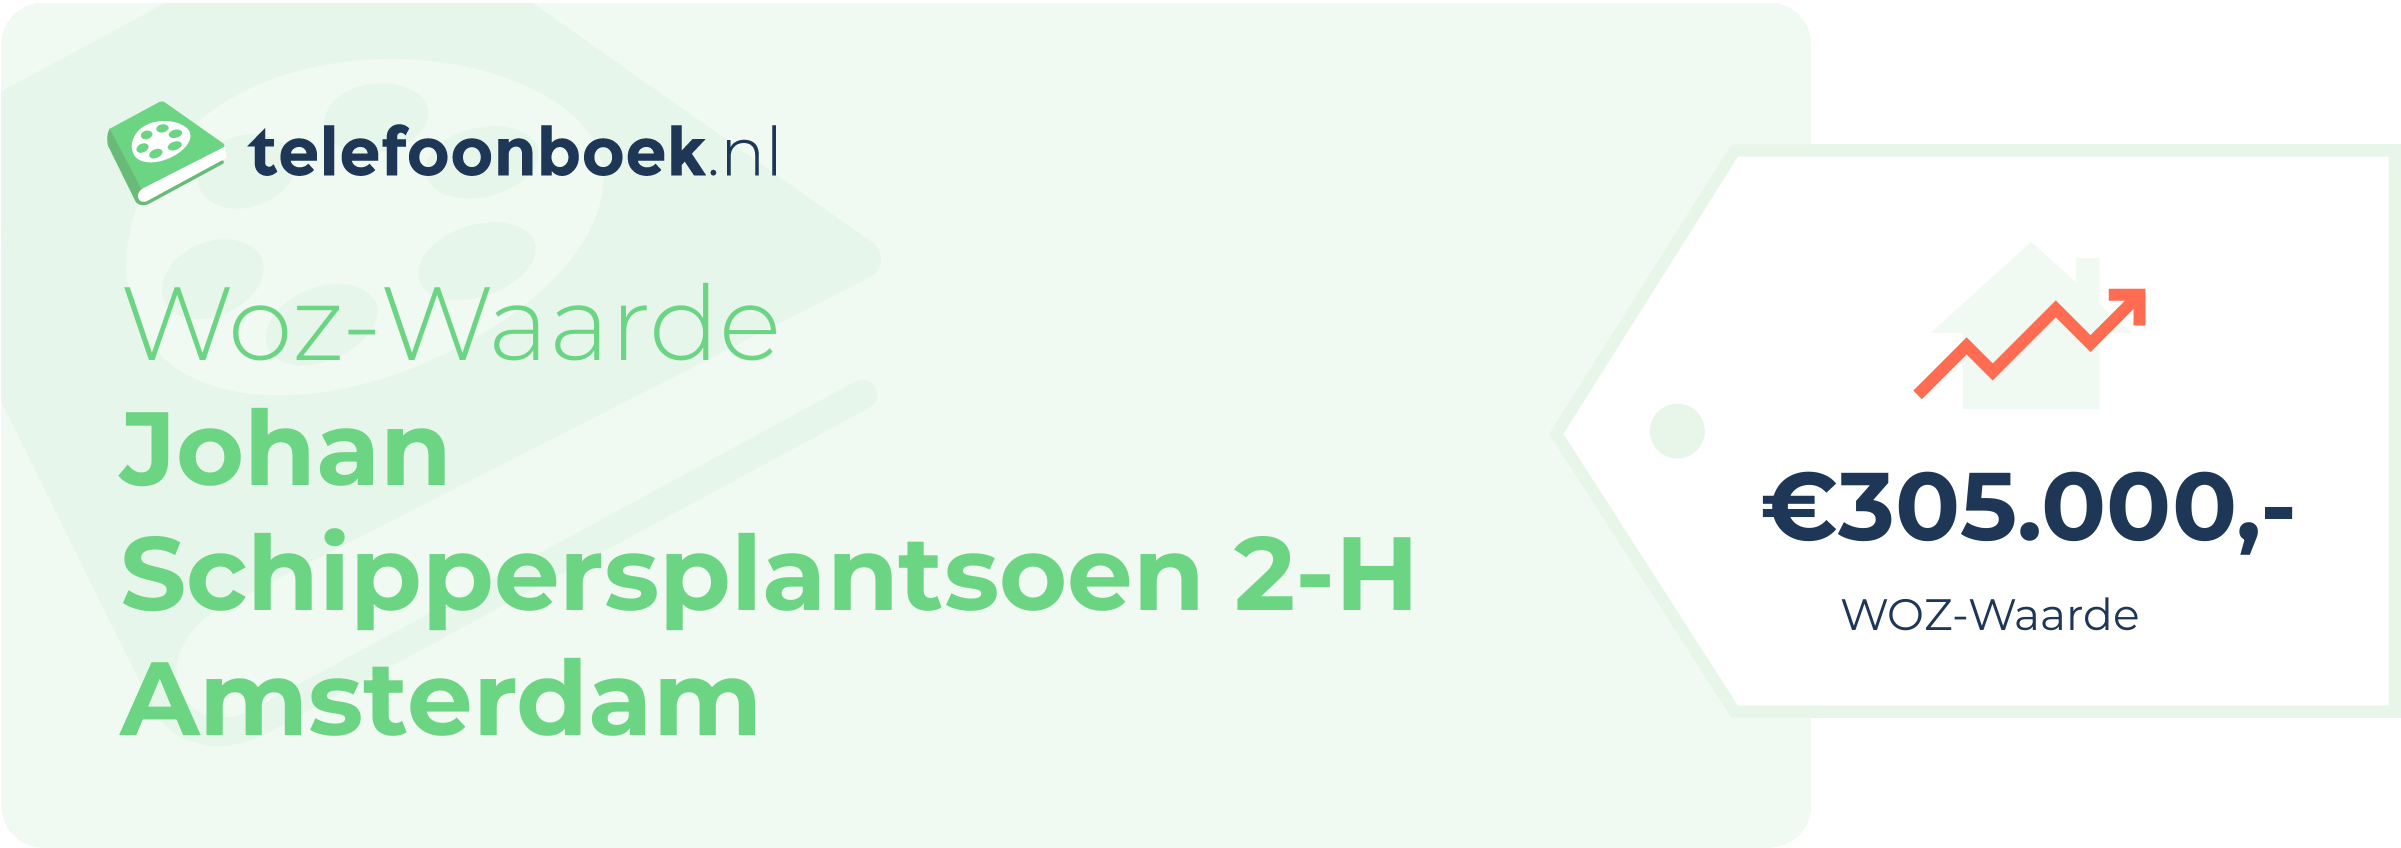 WOZ-waarde Johan Schippersplantsoen 2-H Amsterdam